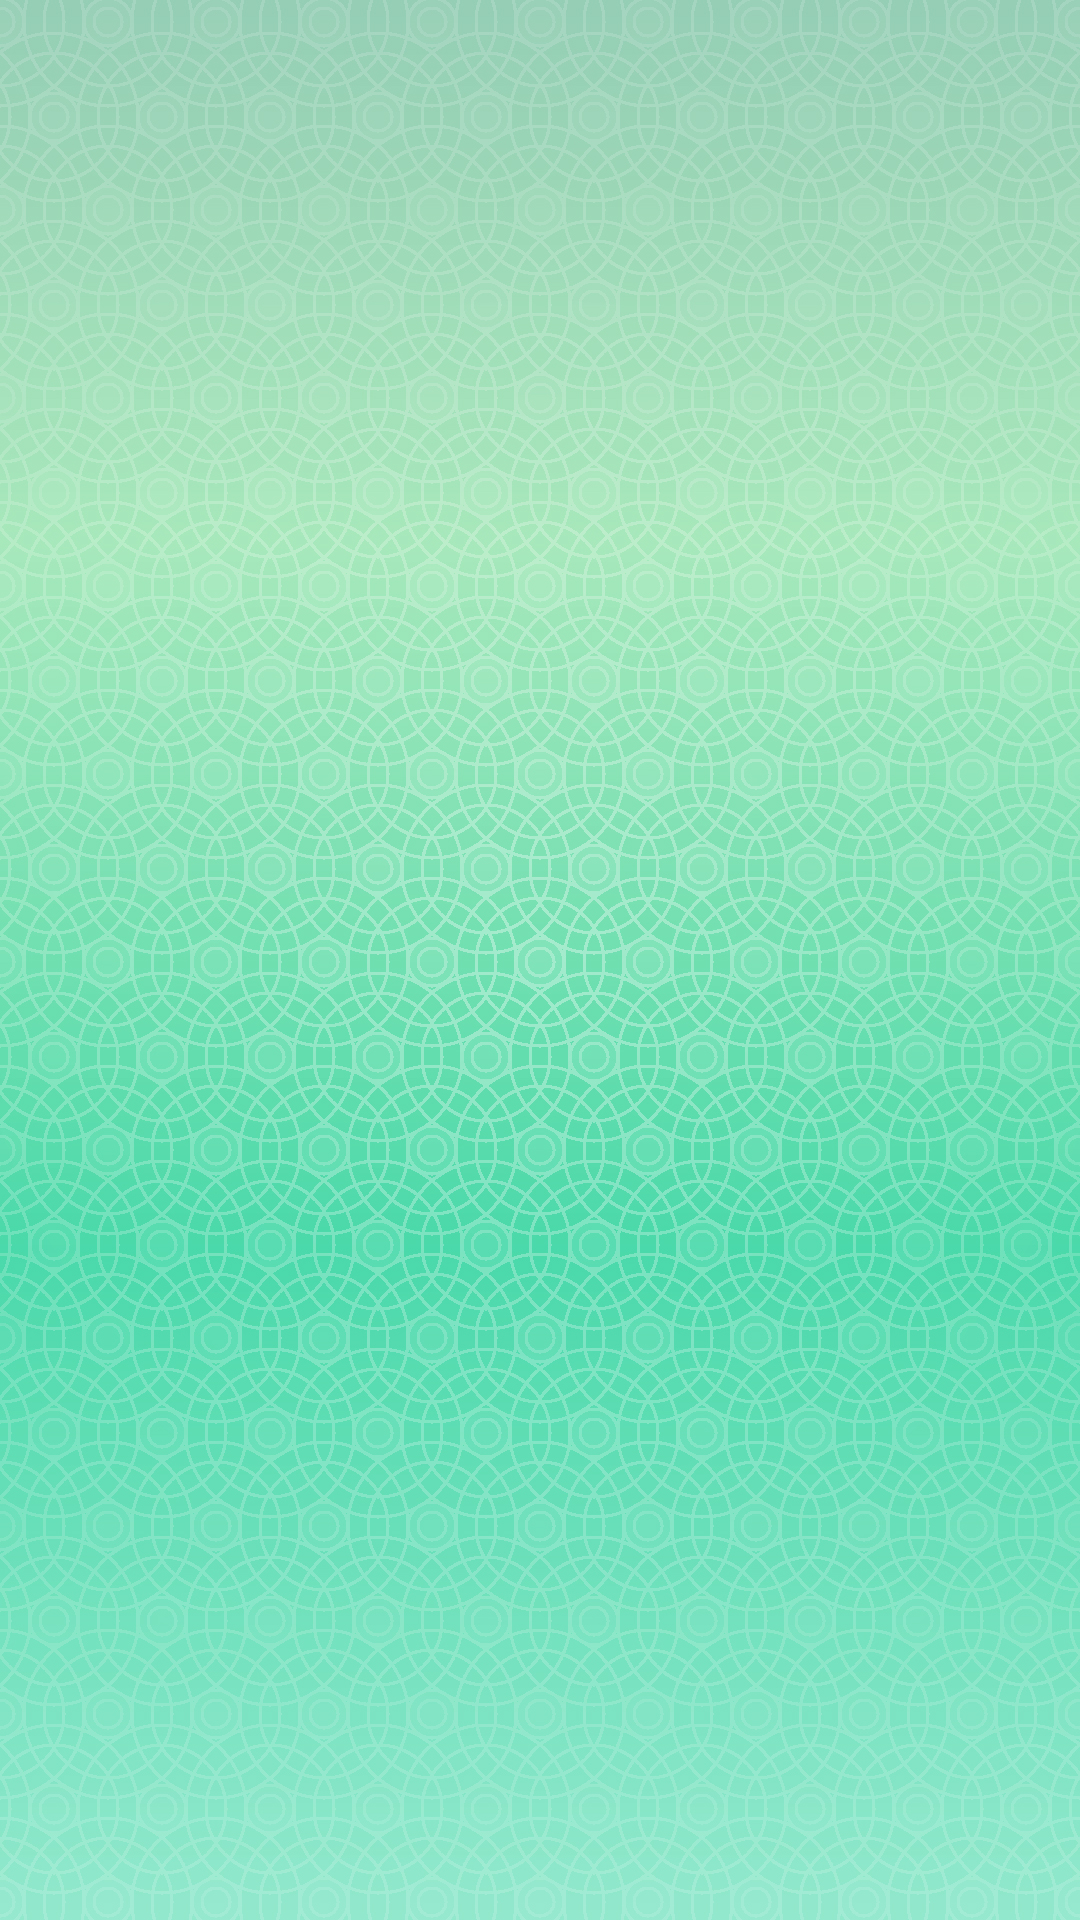 丸グラデーション模様青緑 Wallpaper Sc Iphone7plus壁紙